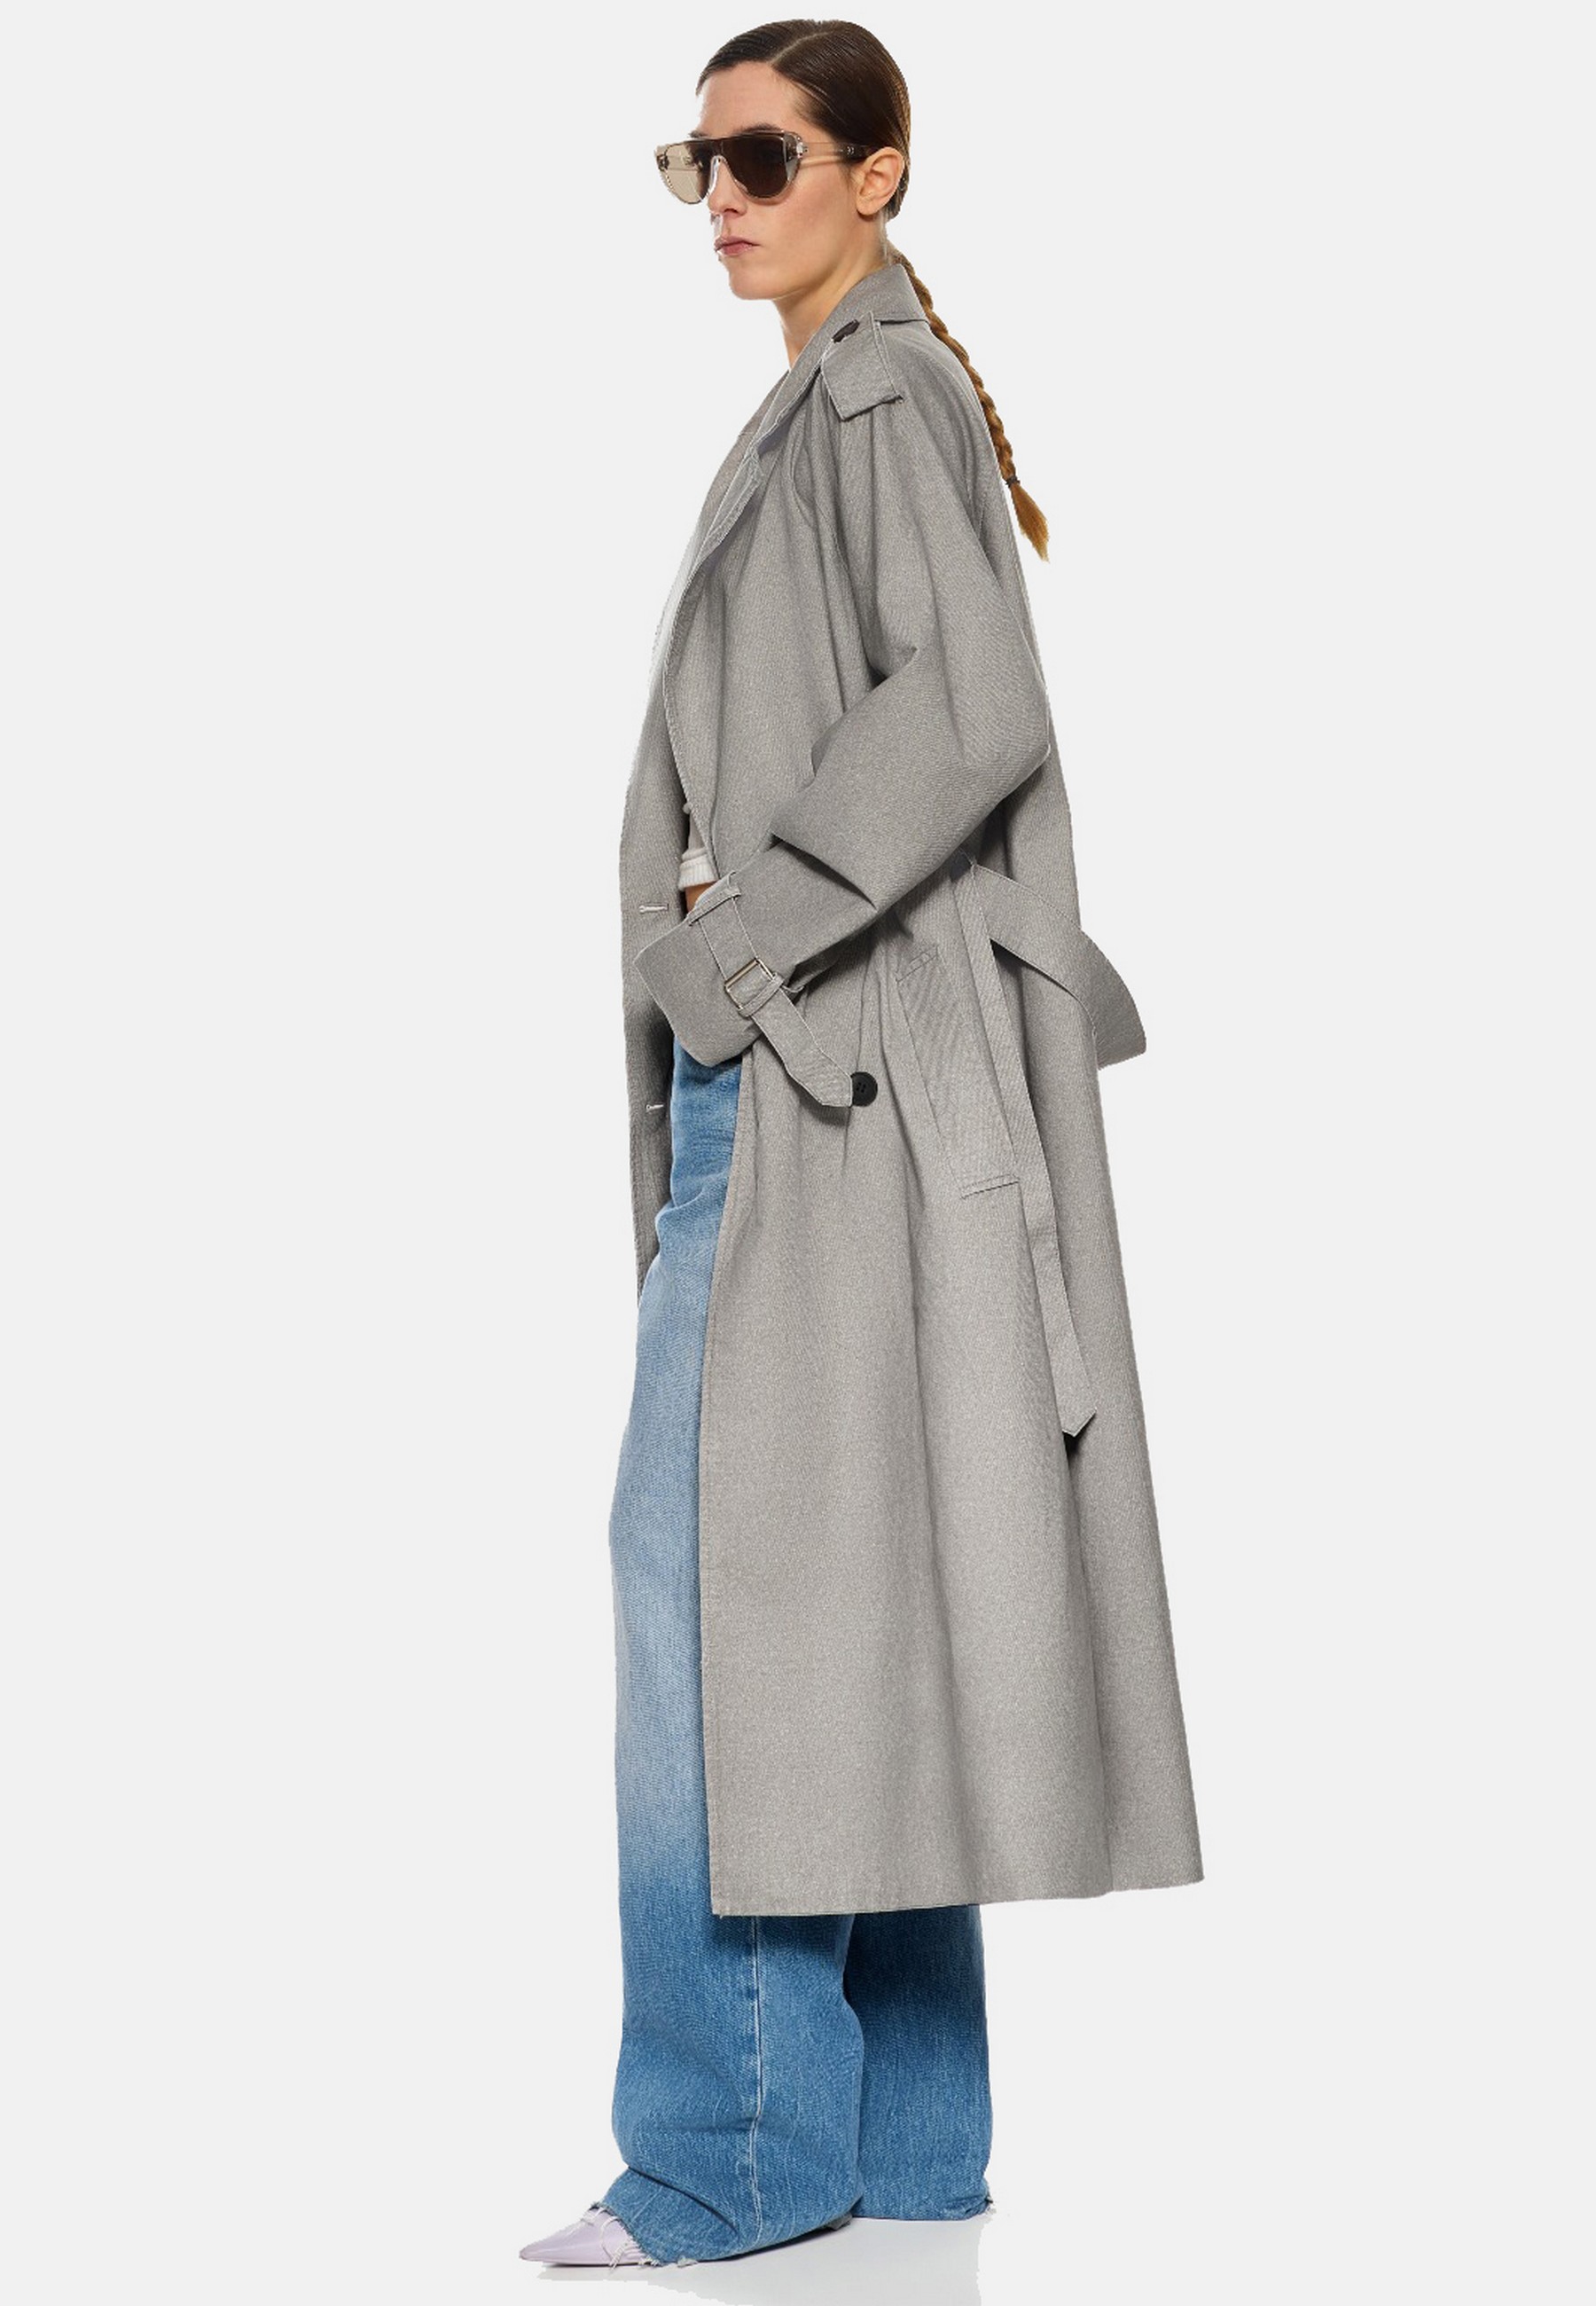 Damen Textil Mantel Clarissa in Grau von Ricano - Seitenansicht am Model